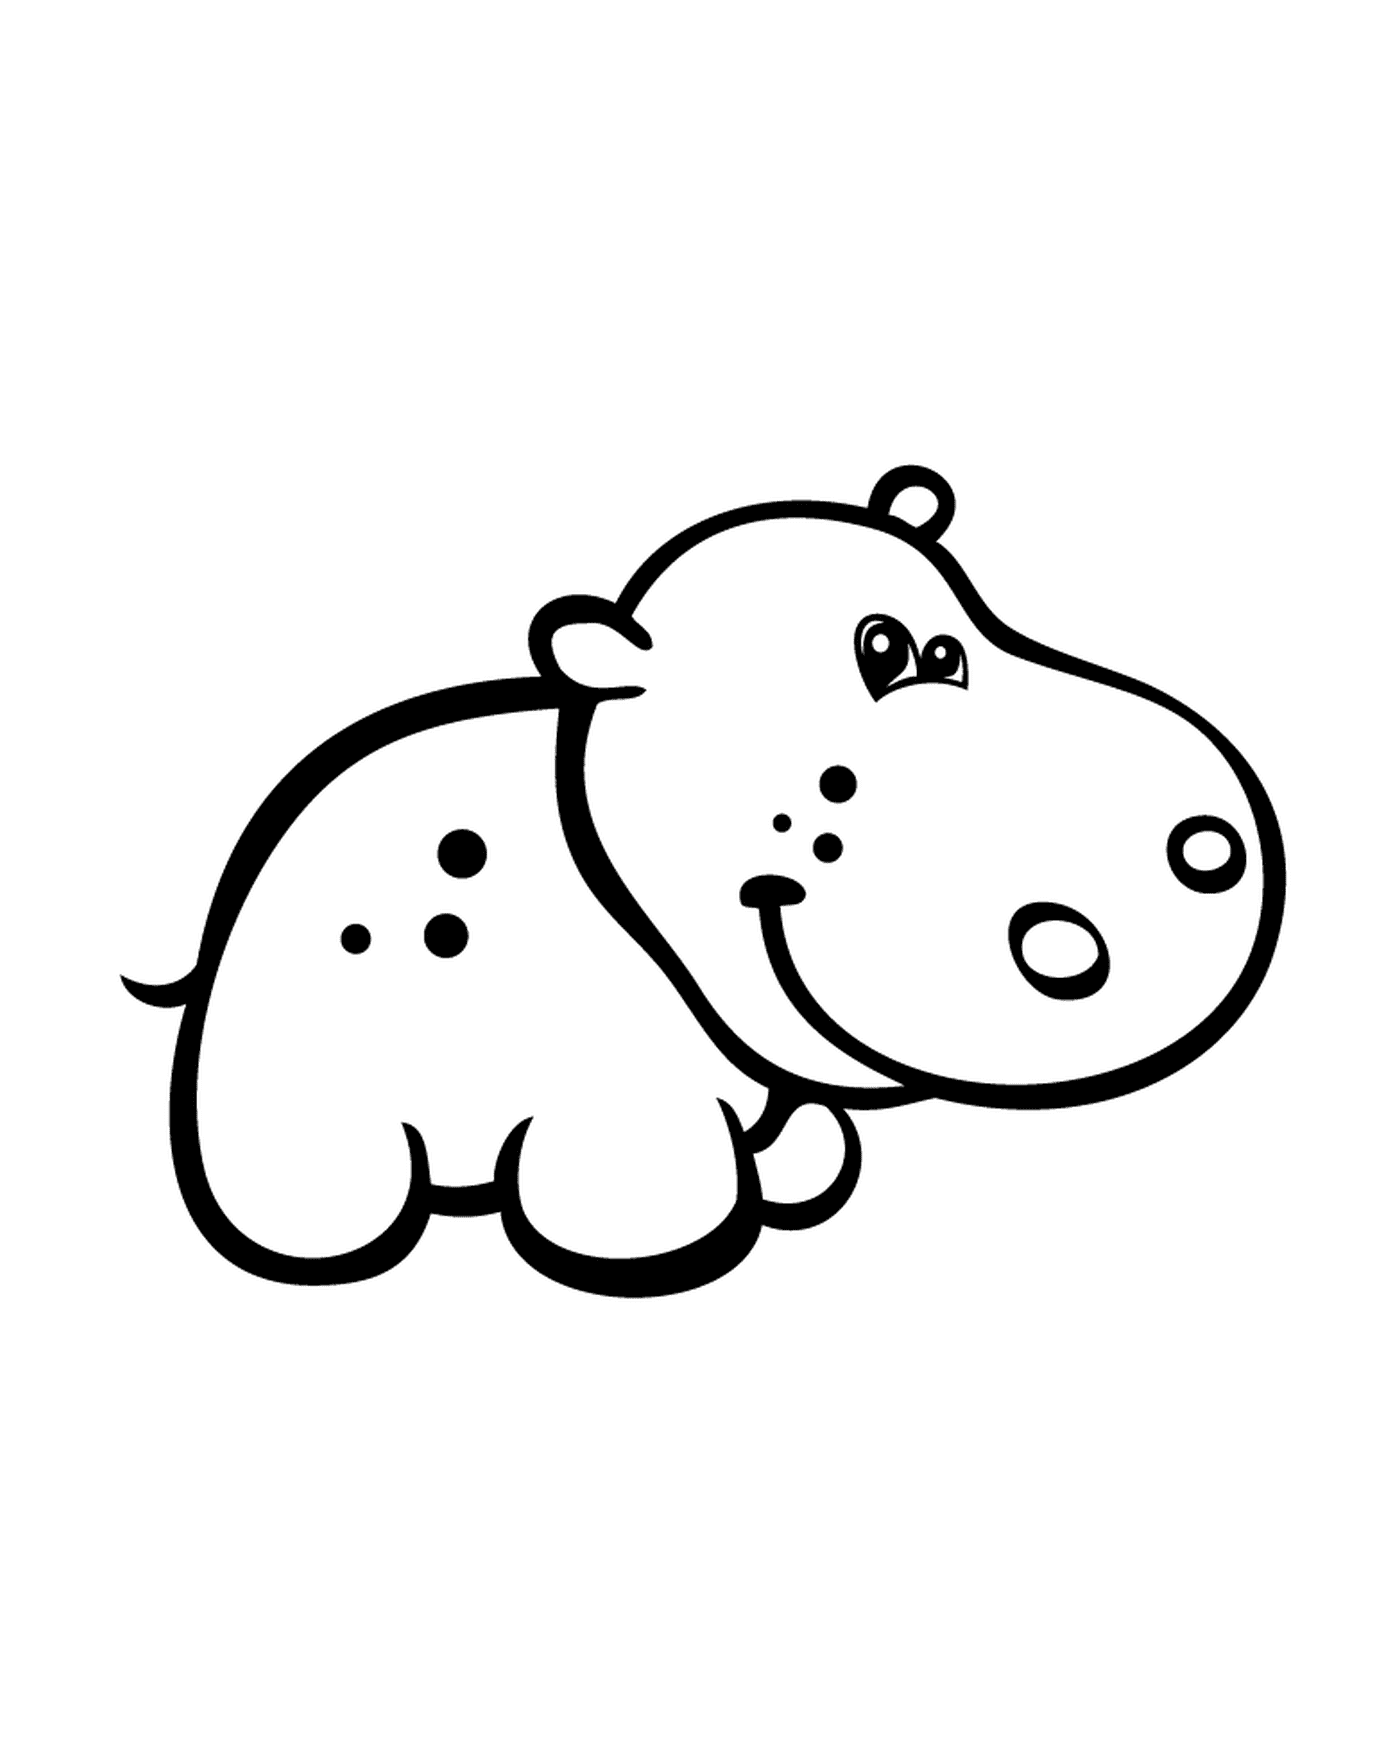  Otra representación de un hipopótamo 